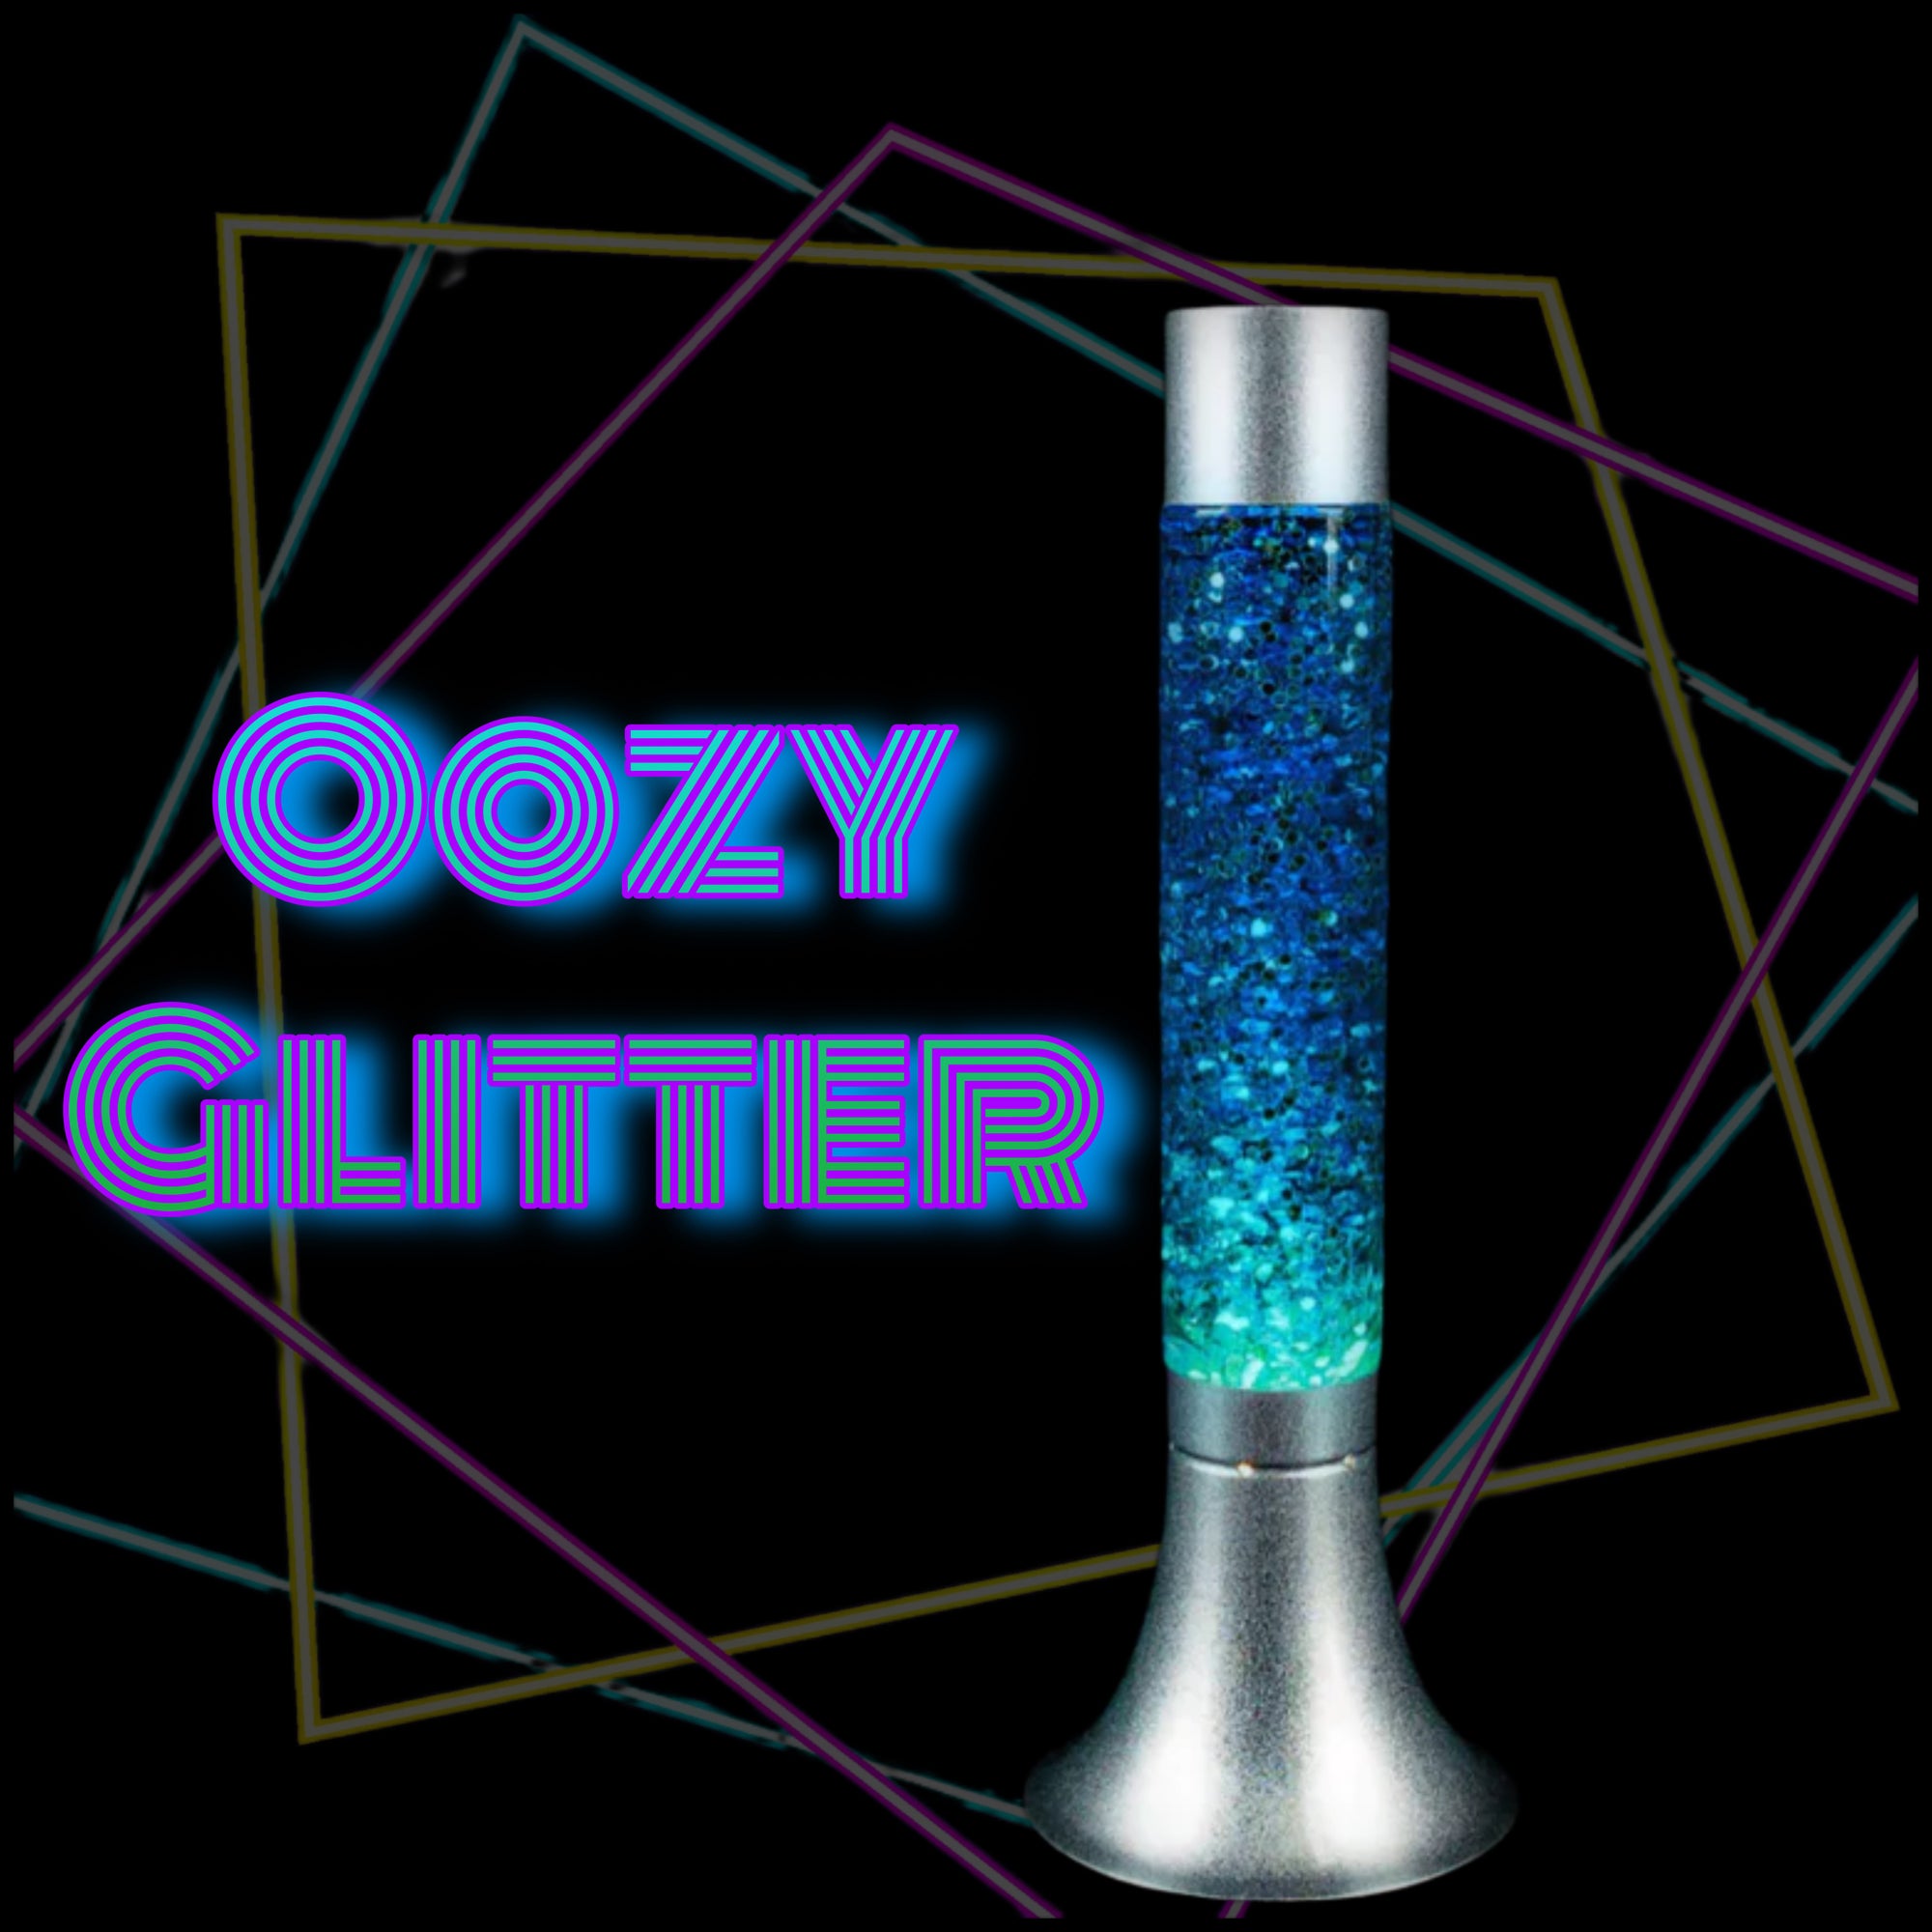 oozy glo glitter lamp